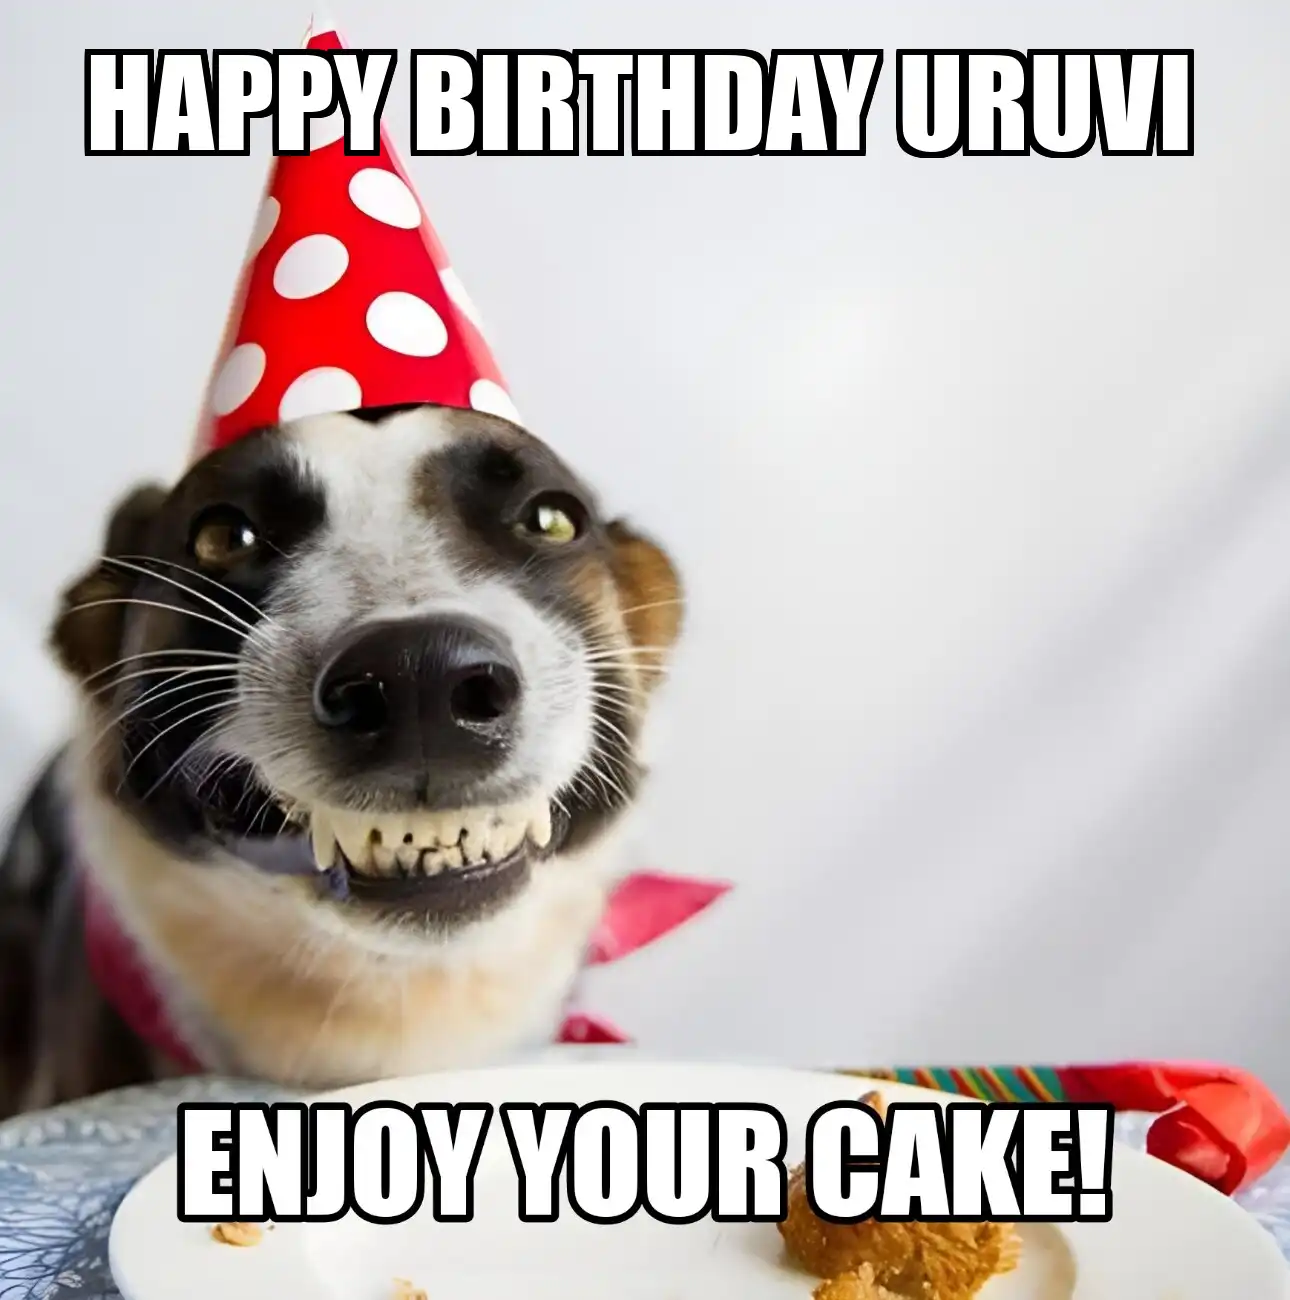 Happy Birthday Uruvi Enjoy Your Cake Dog Meme